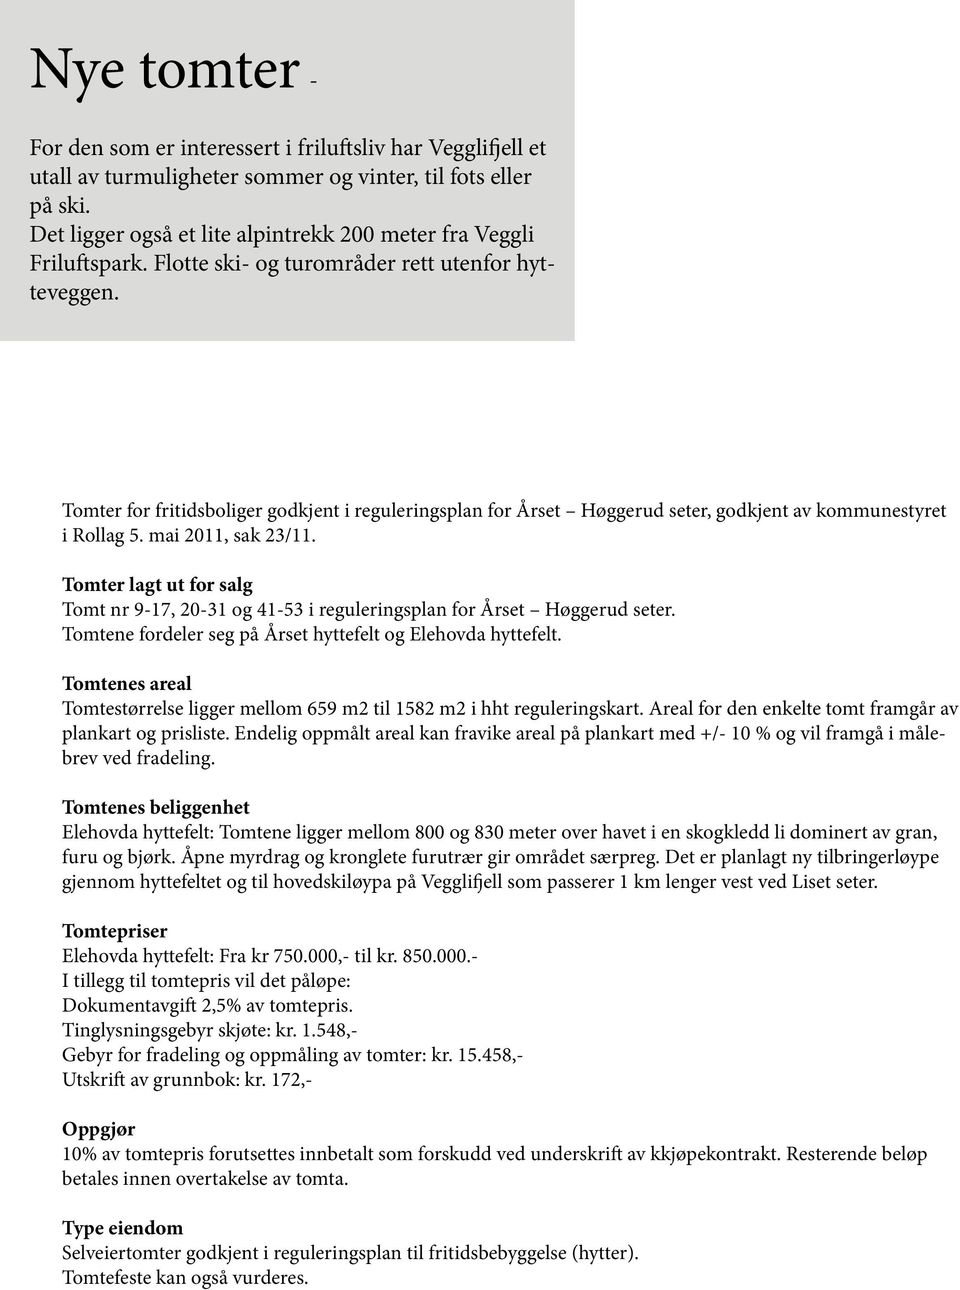 Tomter for fritidsboliger godkjent i reguleringsplan for Årset Høggerud seter, godkjent av kommunestyret i Rollag 5. mai 2011, sak 23/11.